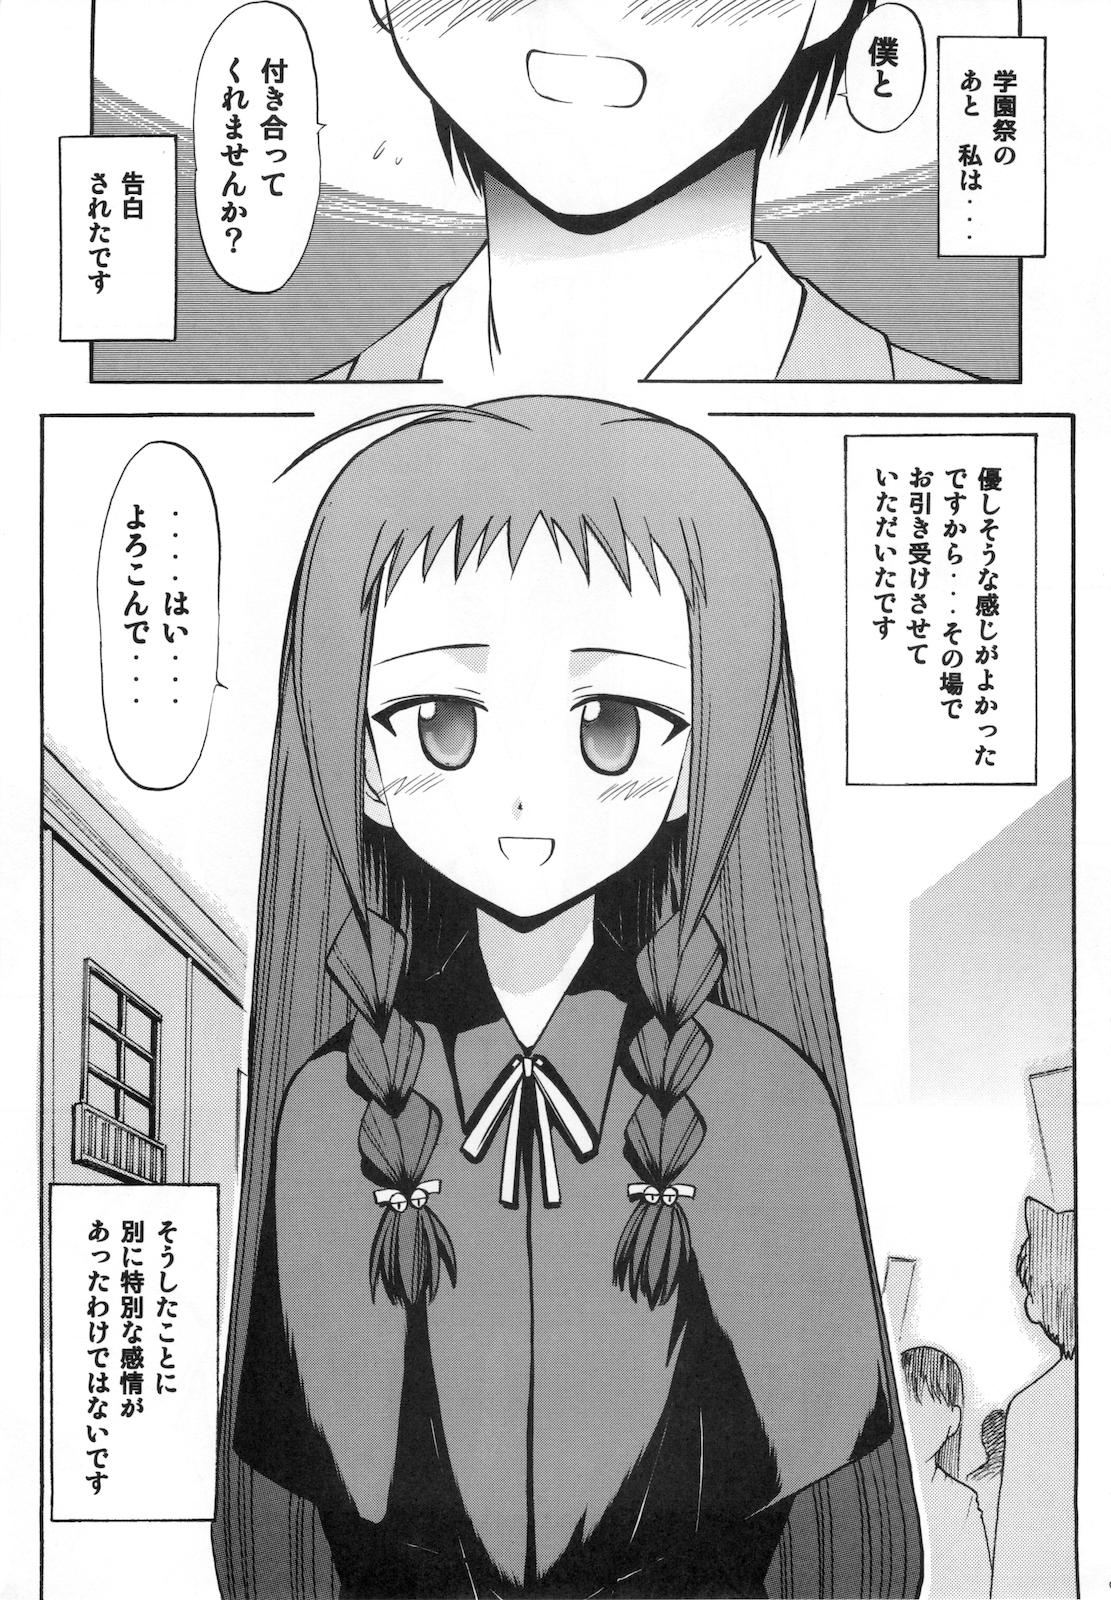 Cogiendo Yue no Koisuru Heart - Mahou sensei negima Gorgeous - Page 5